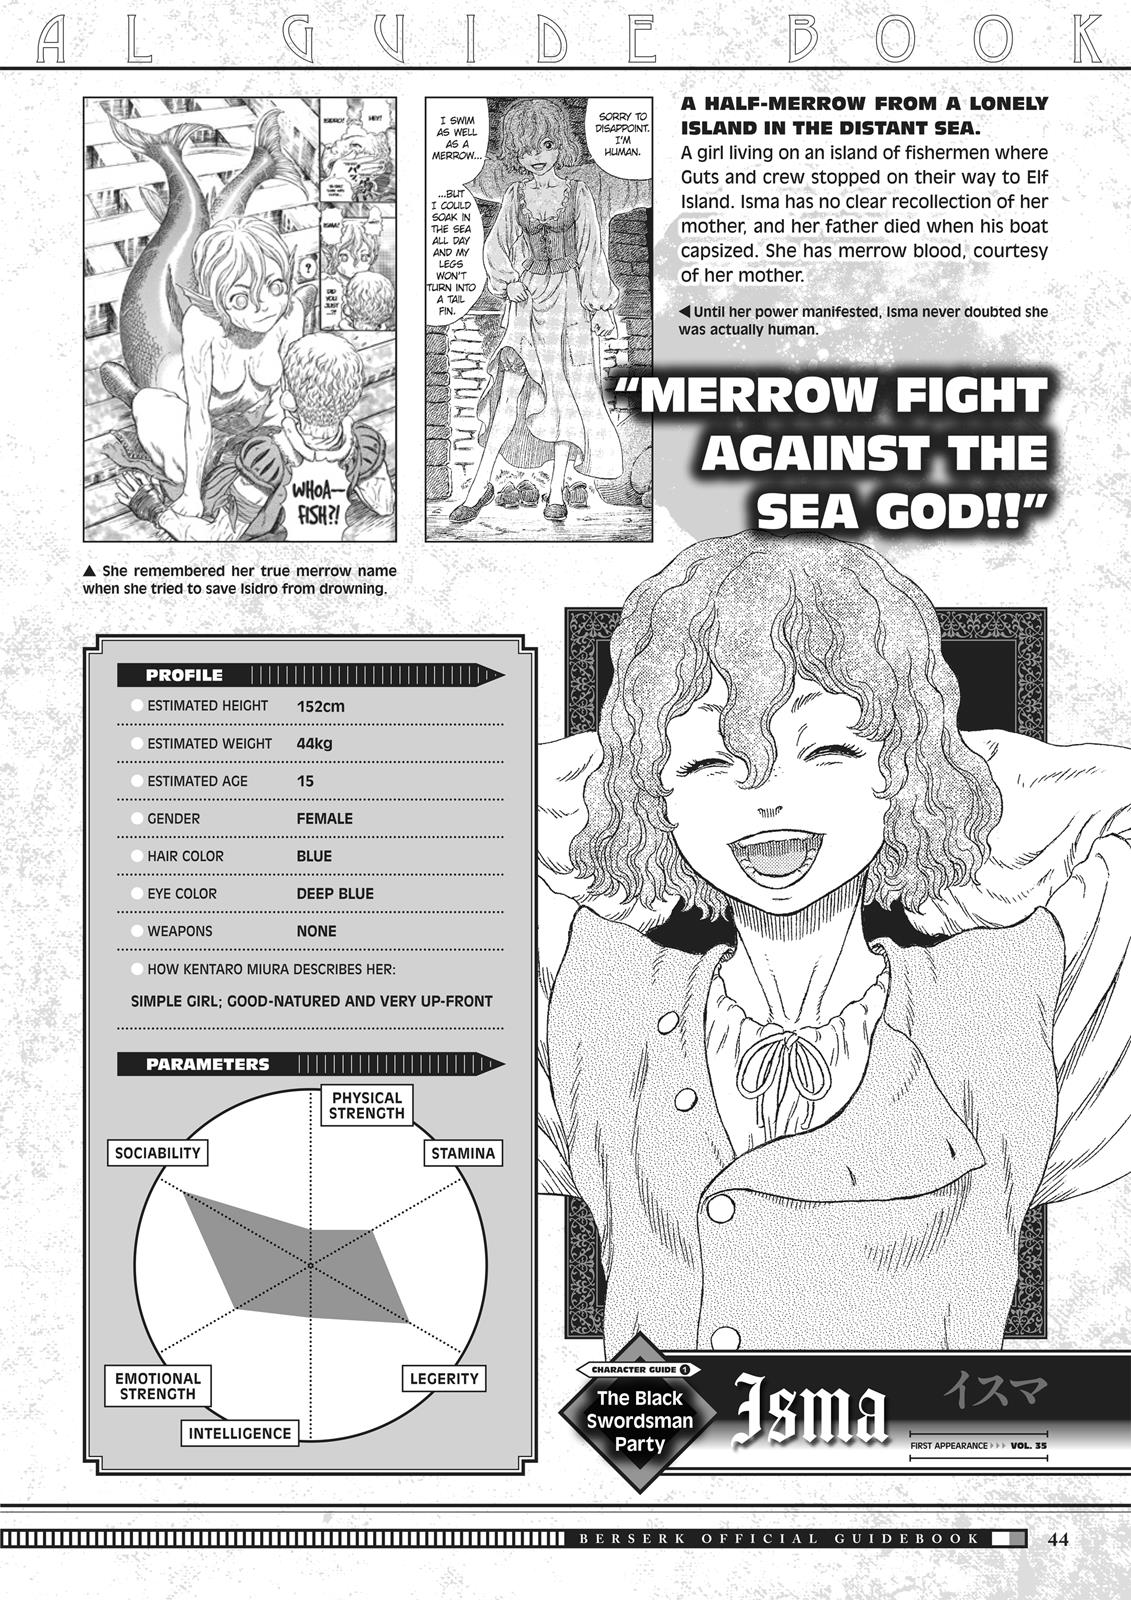 Berserk Manga Chapter 350.5 image 044